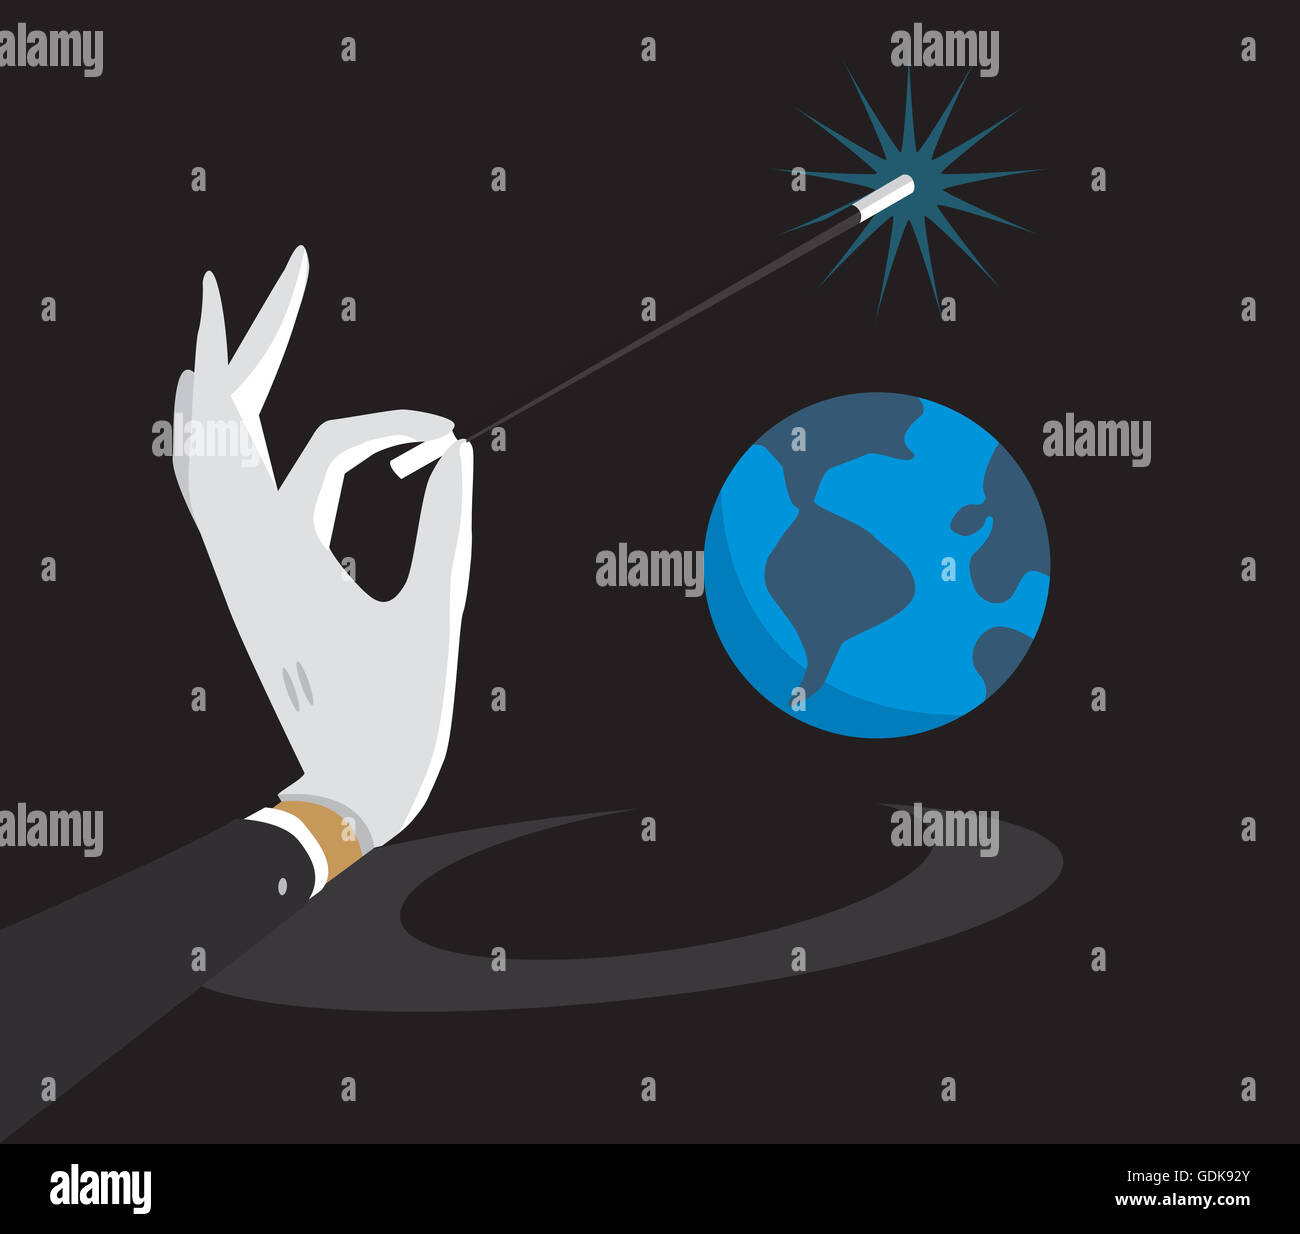 Cartoon illustration of magic wand enchanting tiny planet earth Stock Photo